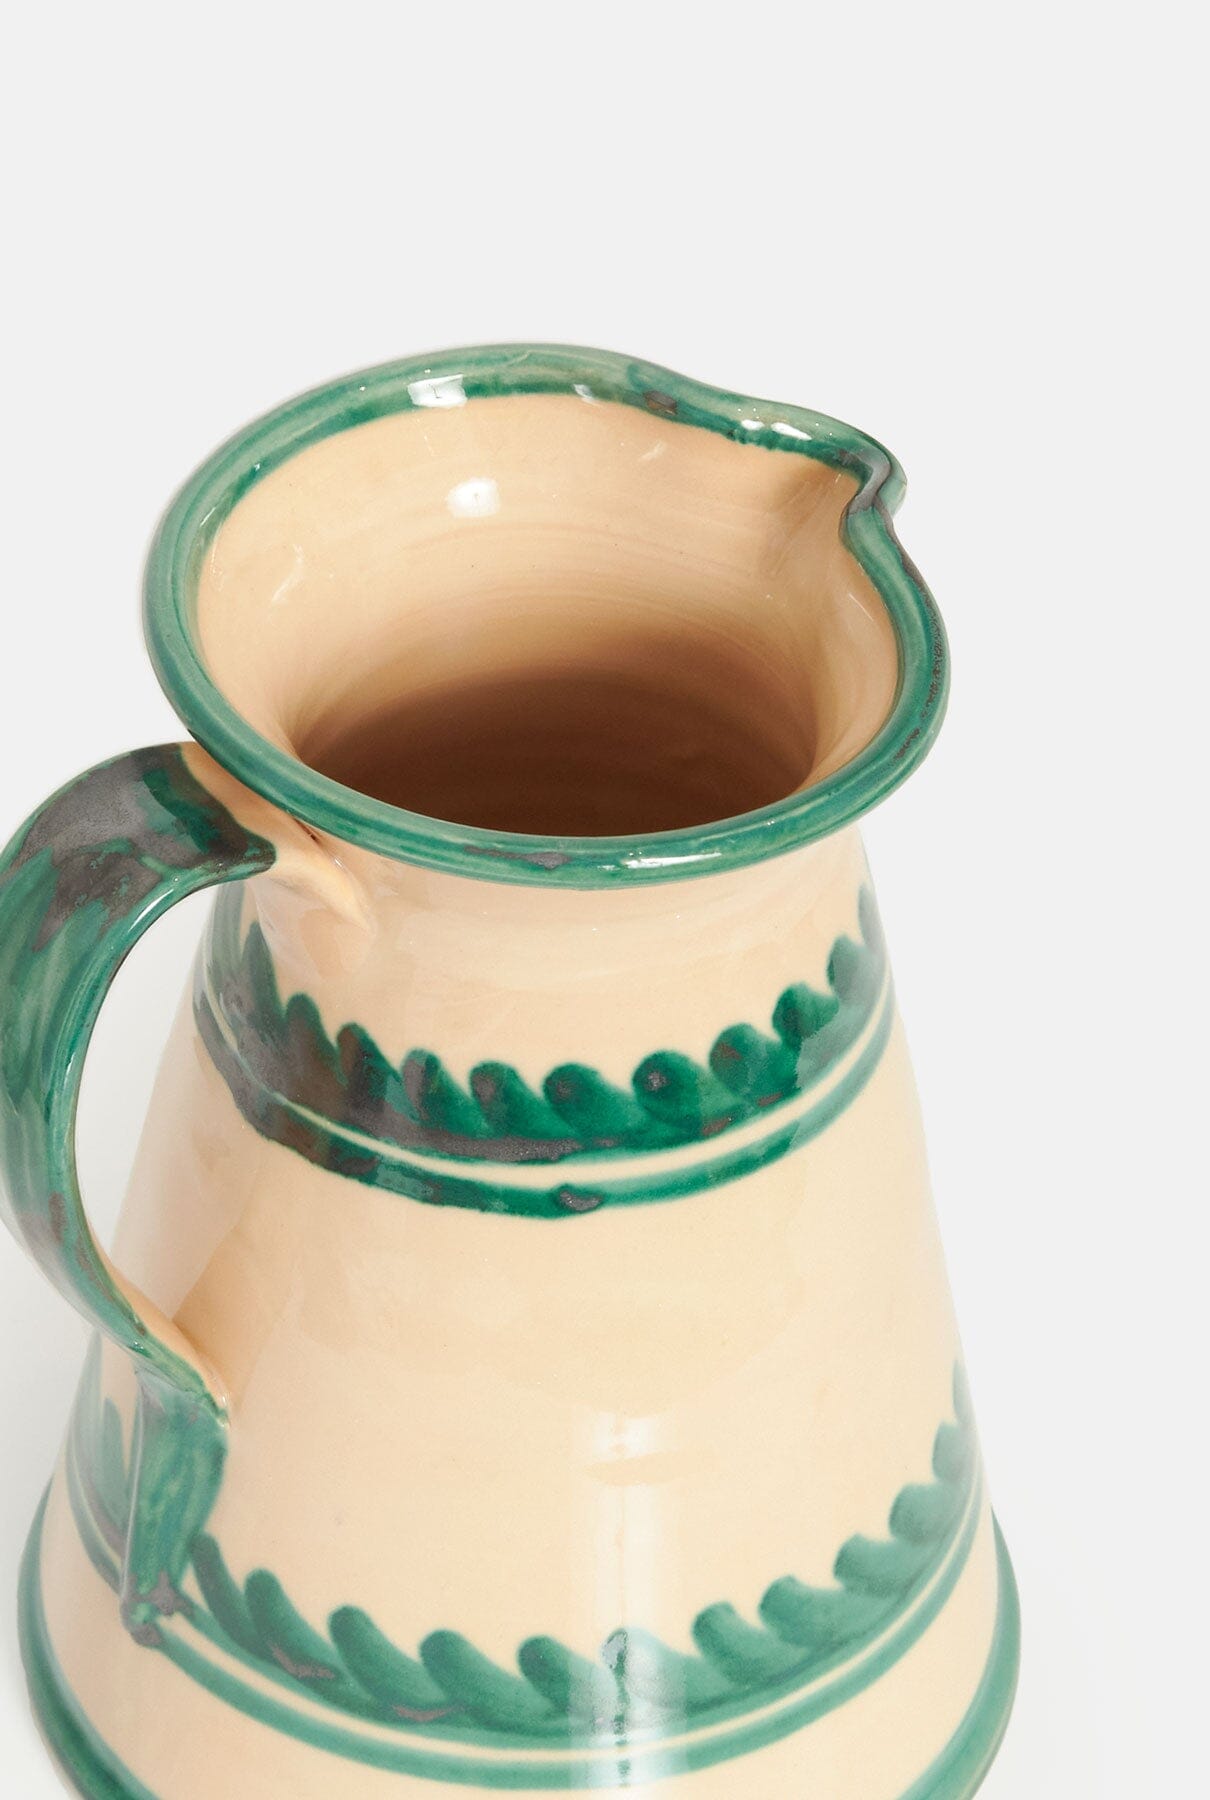 Laurel Terracota Jar or flower vase. Rustic Enamel Tableware Casa Tica 